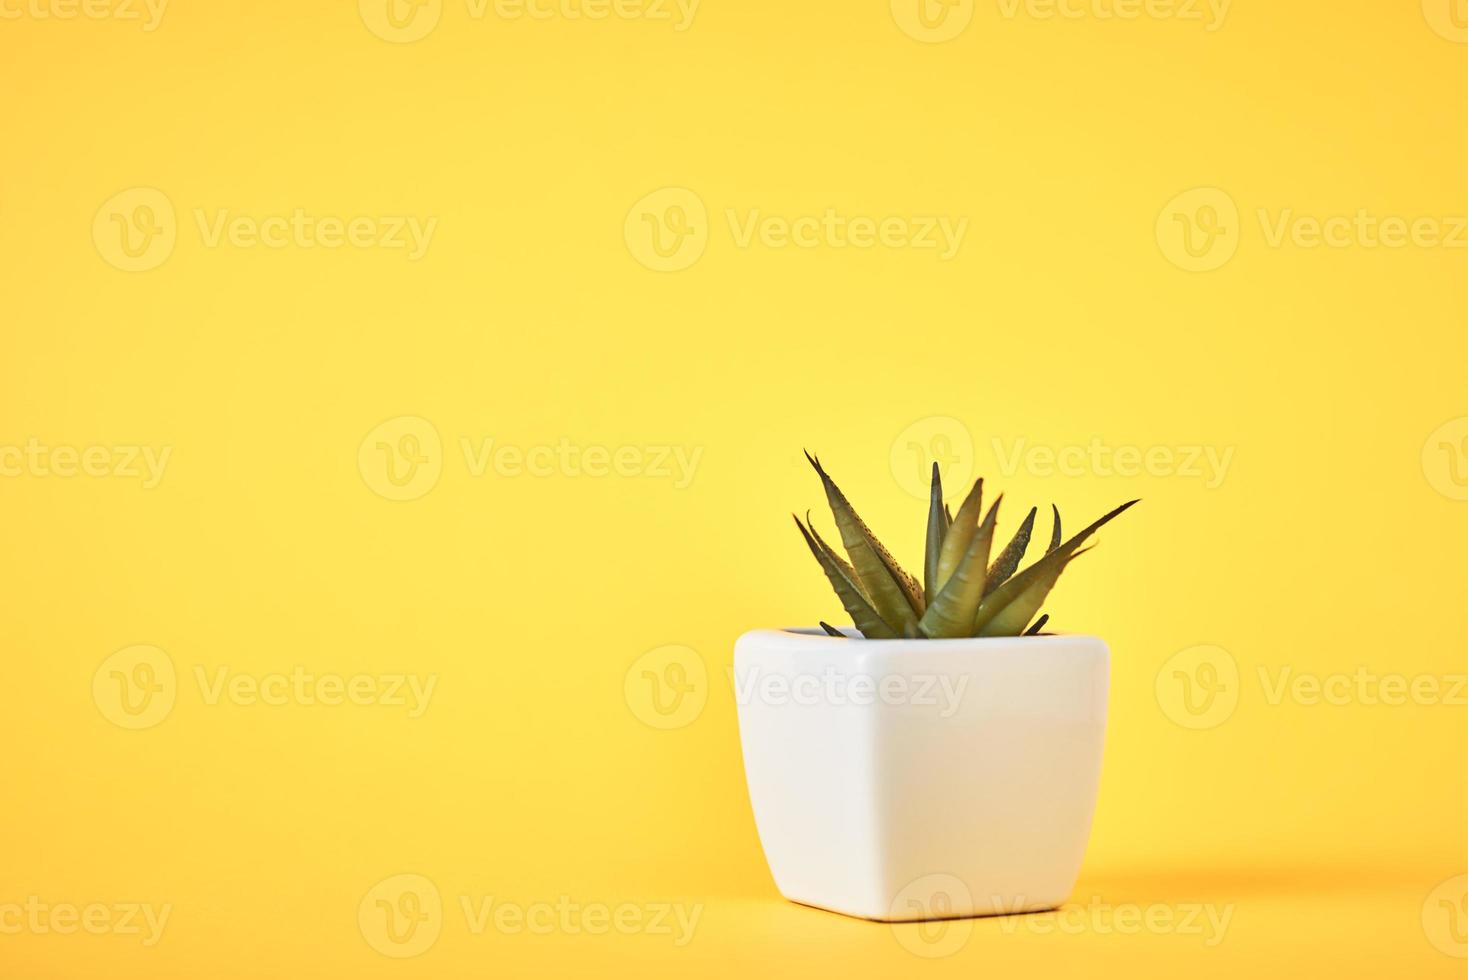 planta suculenta en maceta blanca sobre fondo amarillo foto